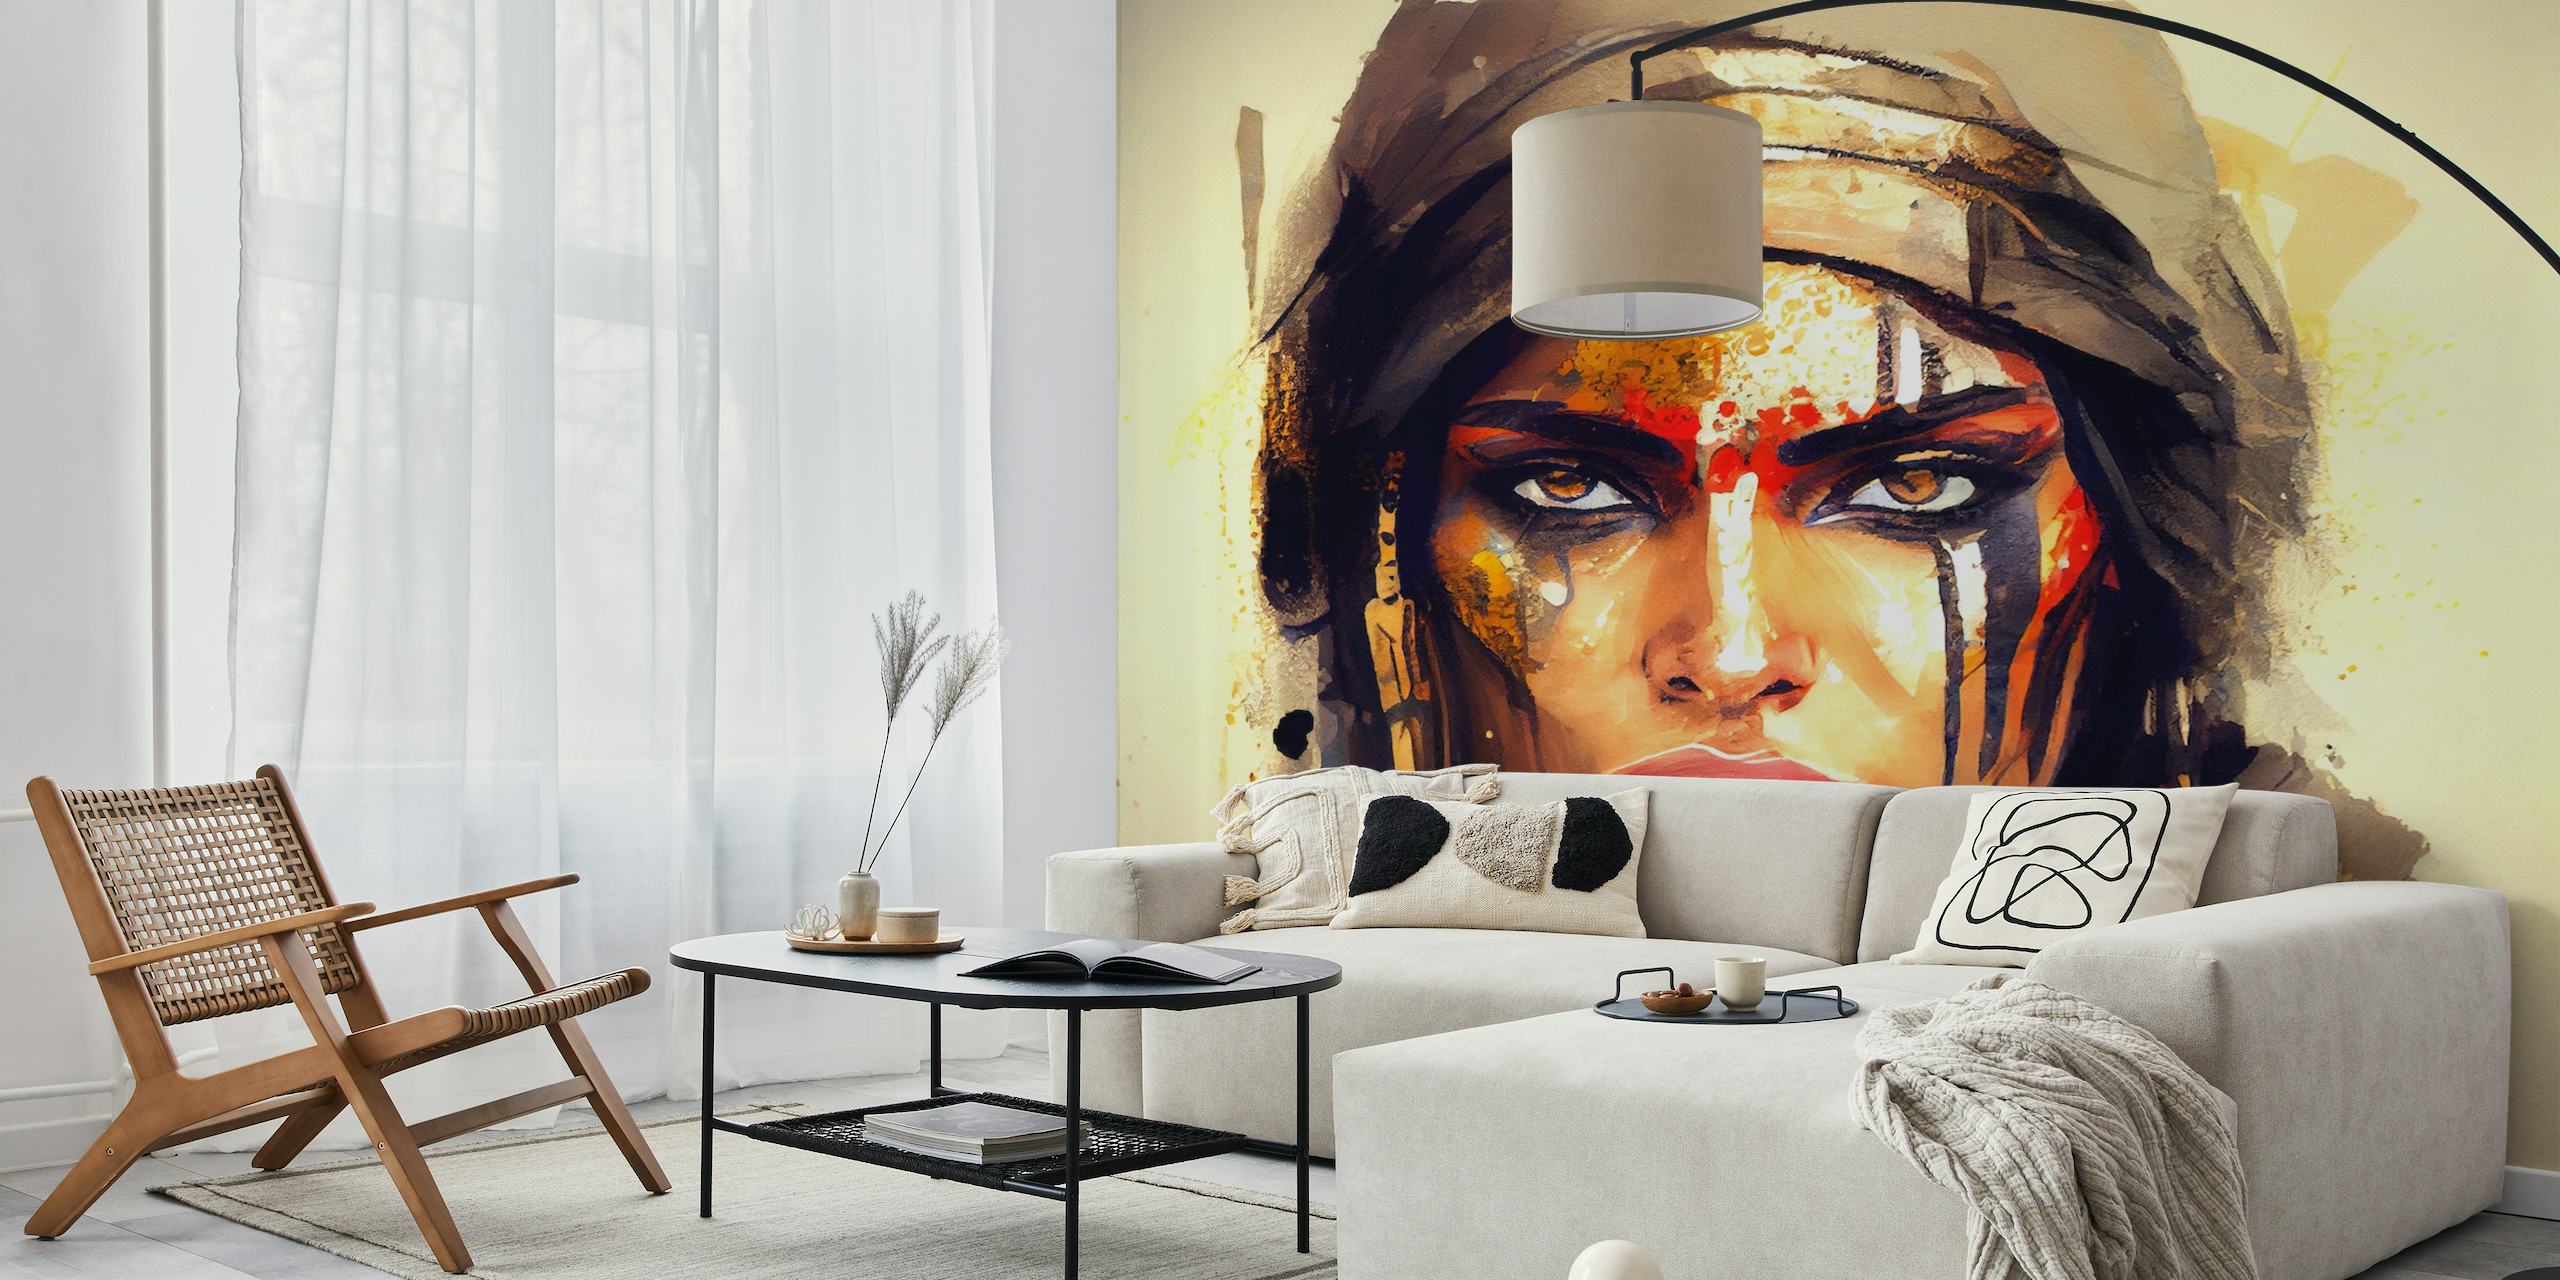 Representación artística de una poderosa mujer guerrera egipcia con pintura facial atrevida y expresión decidida.